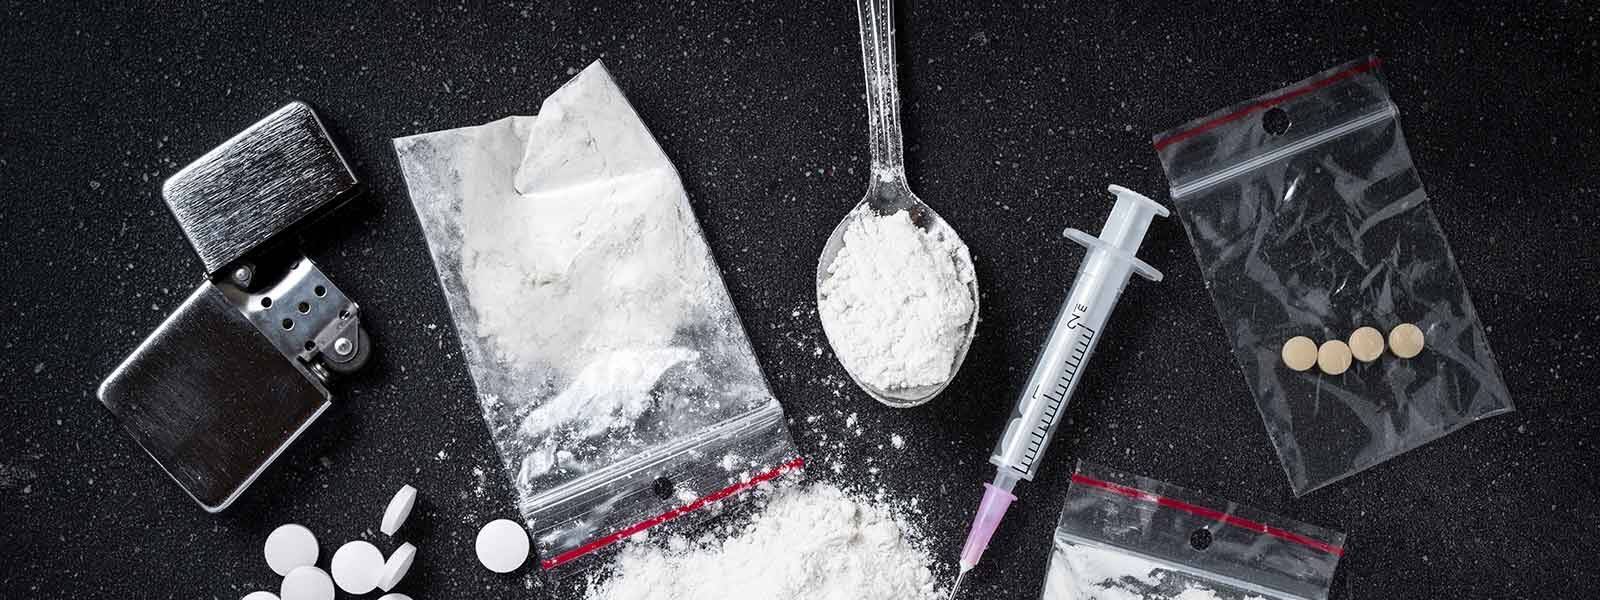 107kg Of Drugs Taken To Puttlam For Destruction